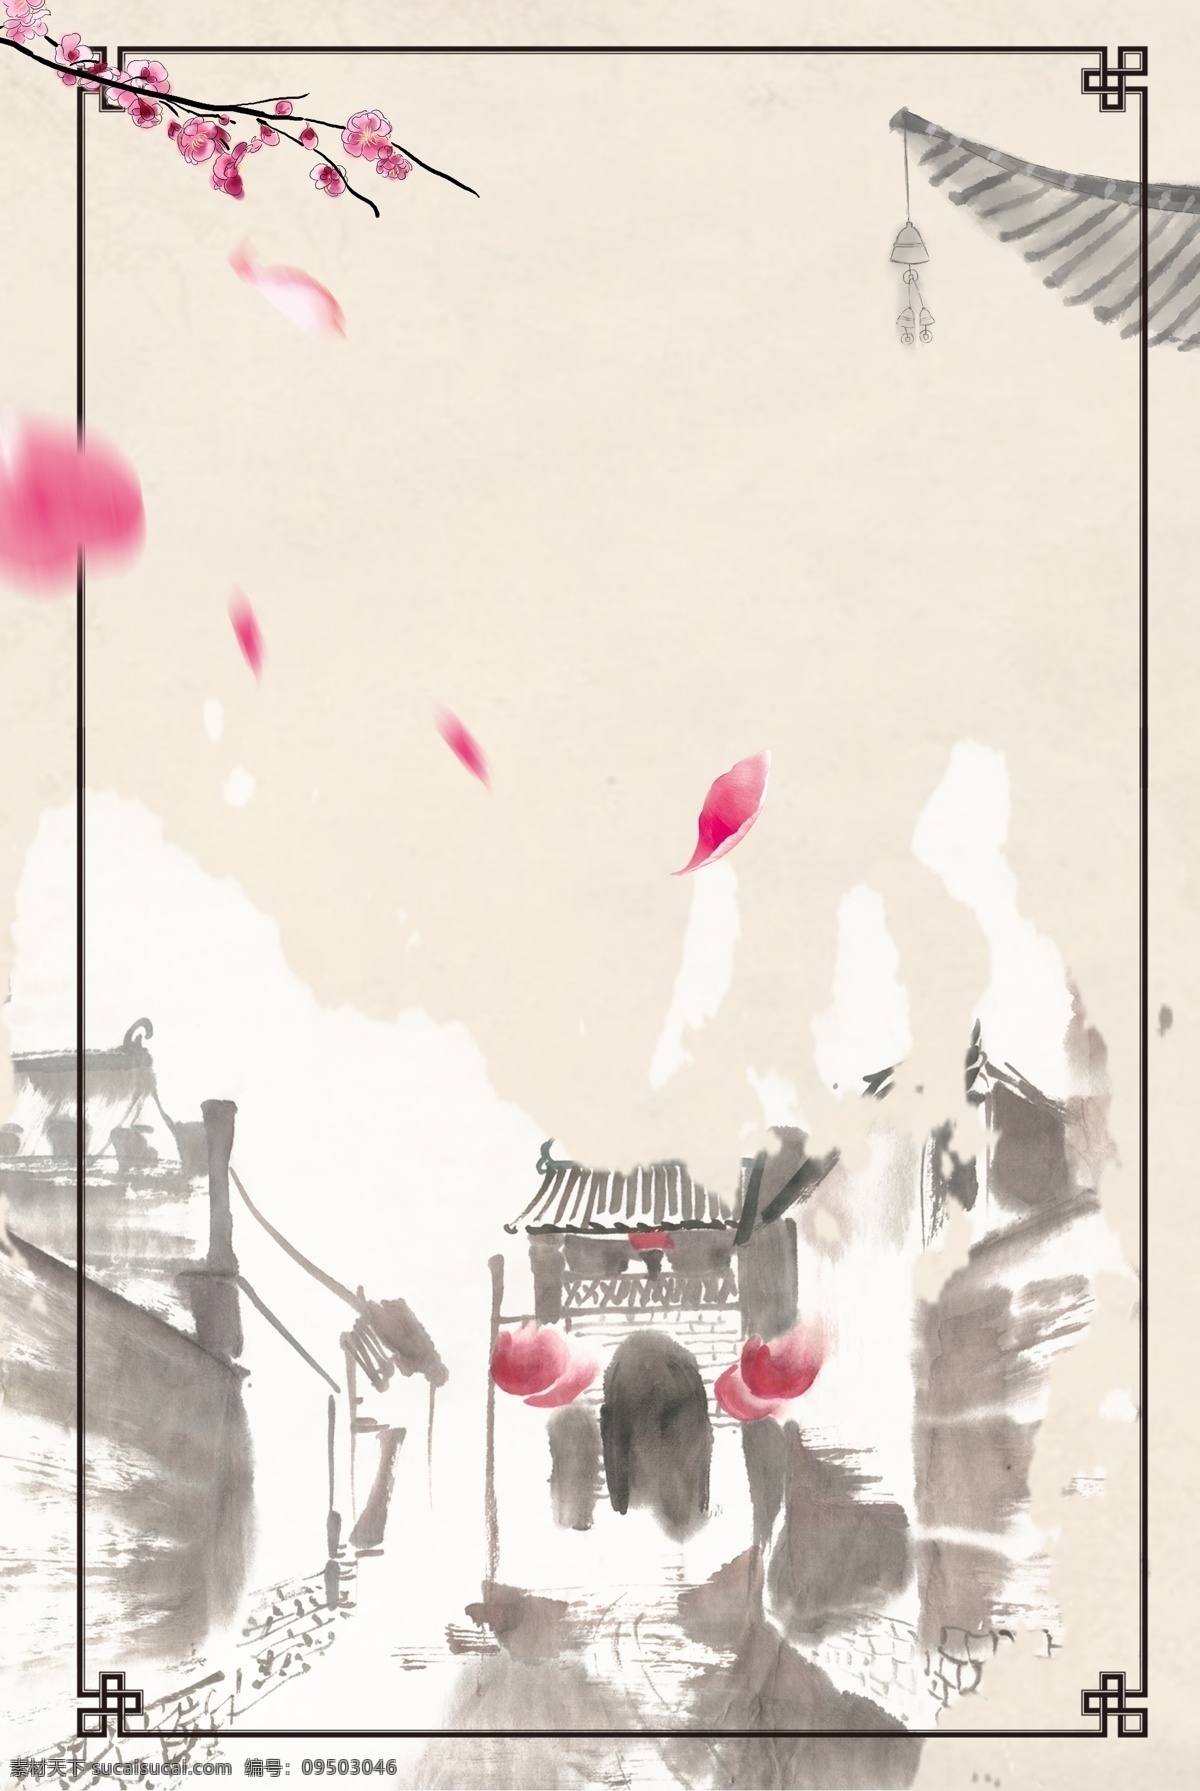 水墨 中国 风 古镇 旅游 场景 广告 海报 背景 手绘 中国风 休闲度假 梅花 花瓣 屋檐 风铃